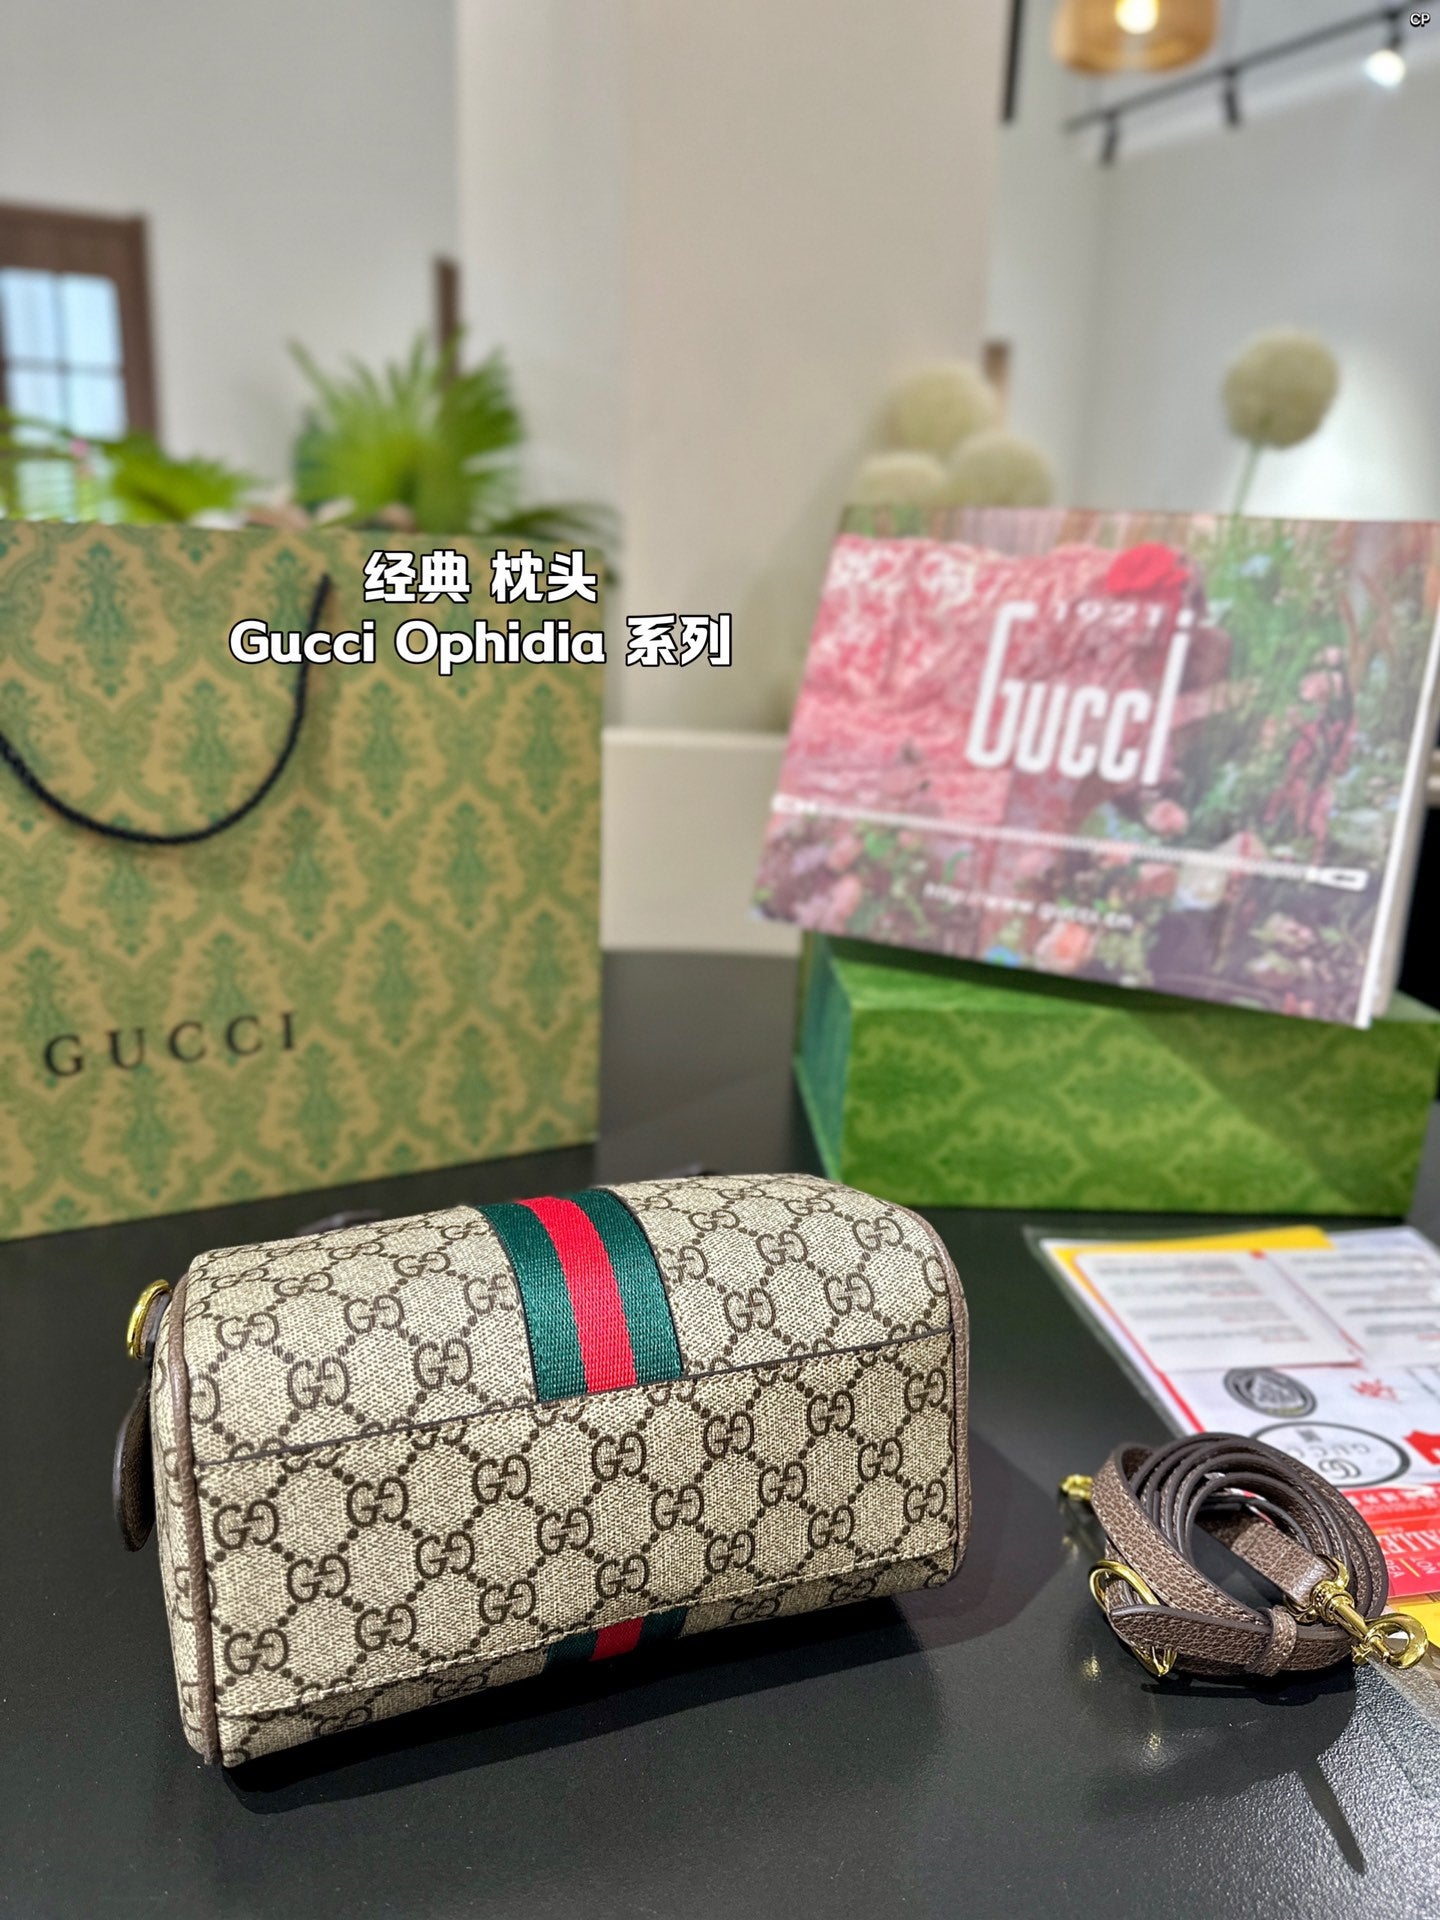 Gucci Handbag